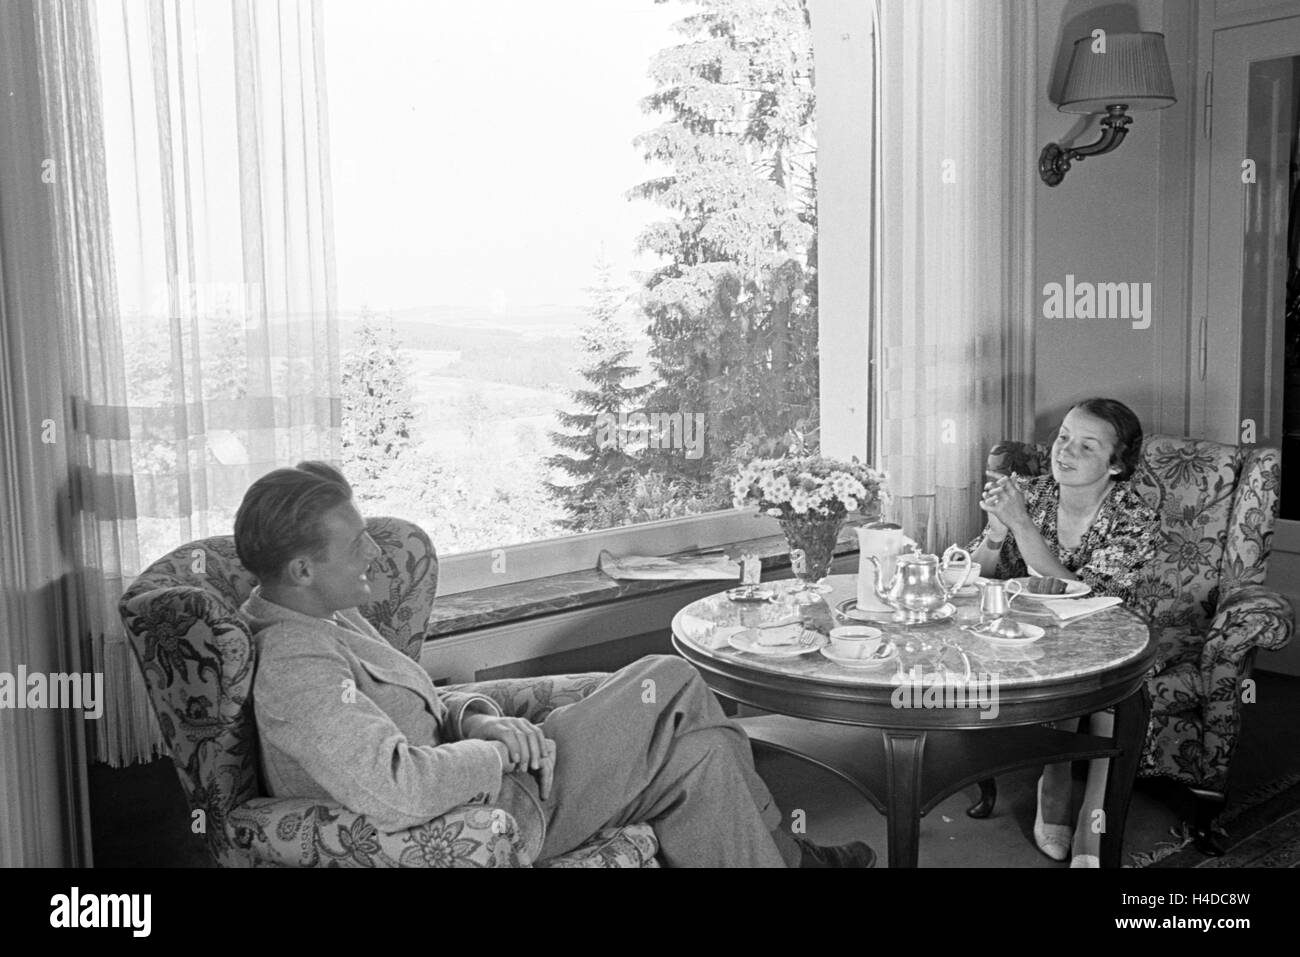 Gäste im Schwarzwaldhotel Waldlust in Freudenstadt, Deutschland 1930er Jahre. Guests in Hotel Waldlust in the Black Forest in Freudenstadt, Germany 1930s. Stock Photo